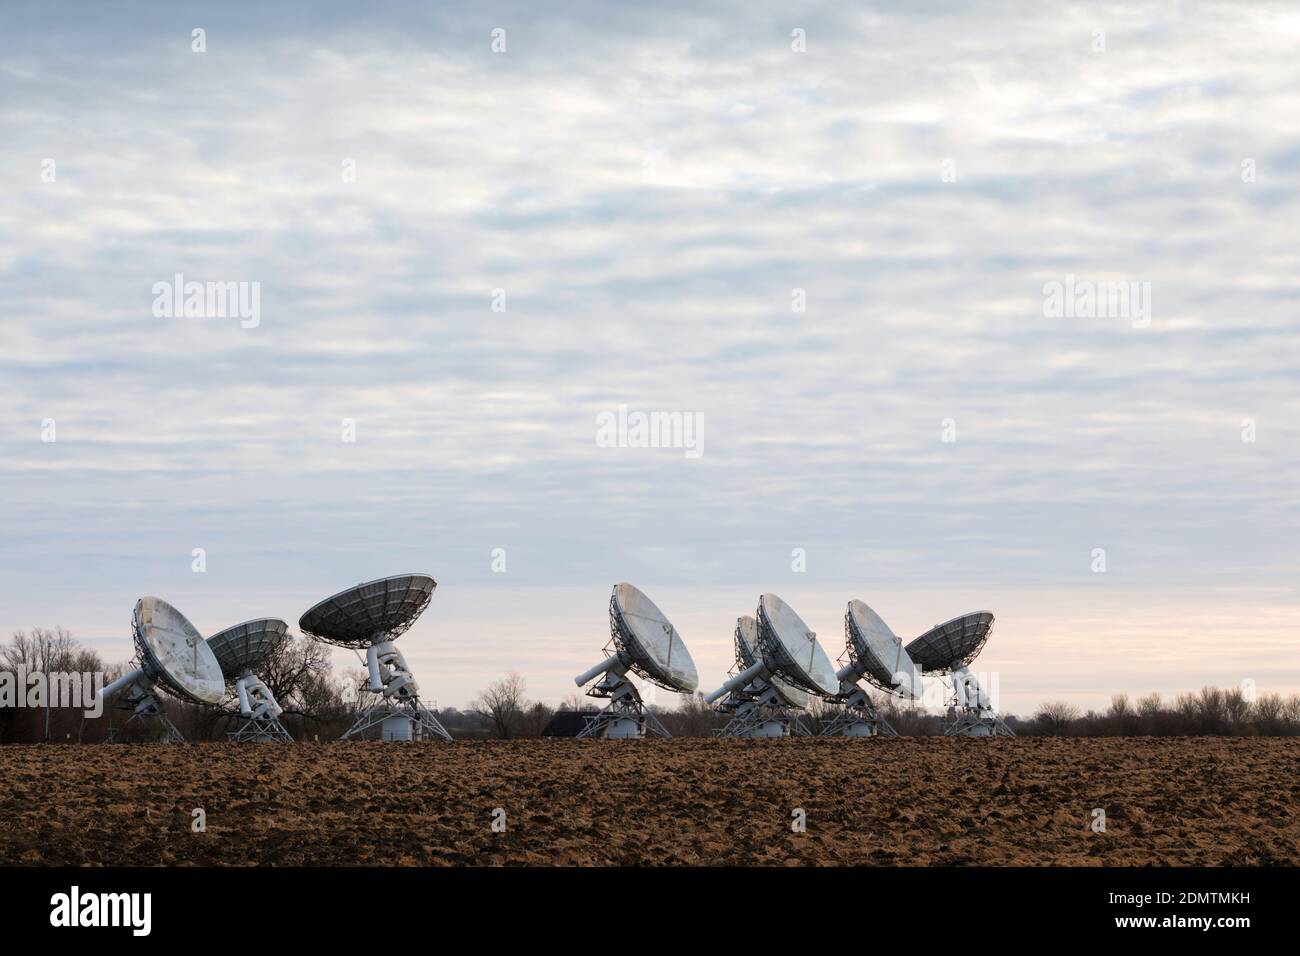 Mullard osservatorio di radioastronomia radiotelescopi, Cambridgeshire, Regno Unito Foto Stock